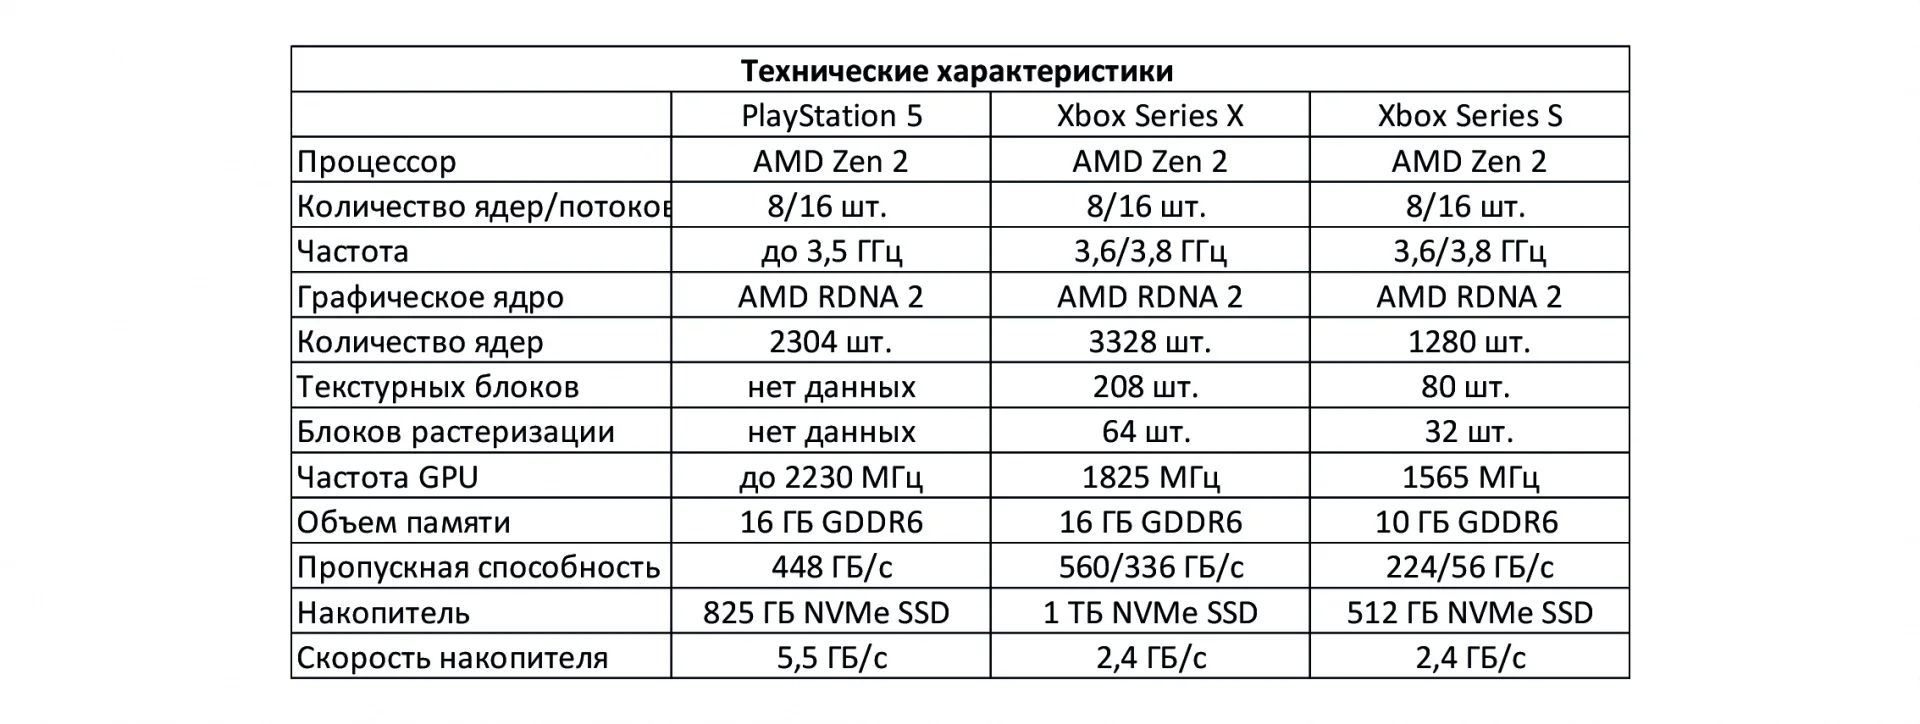 Всё о Sony PlayStation 5. Характеристики, размеры, игры, геймпад, обратная совместимость, сравнение с Xbox - фото 5